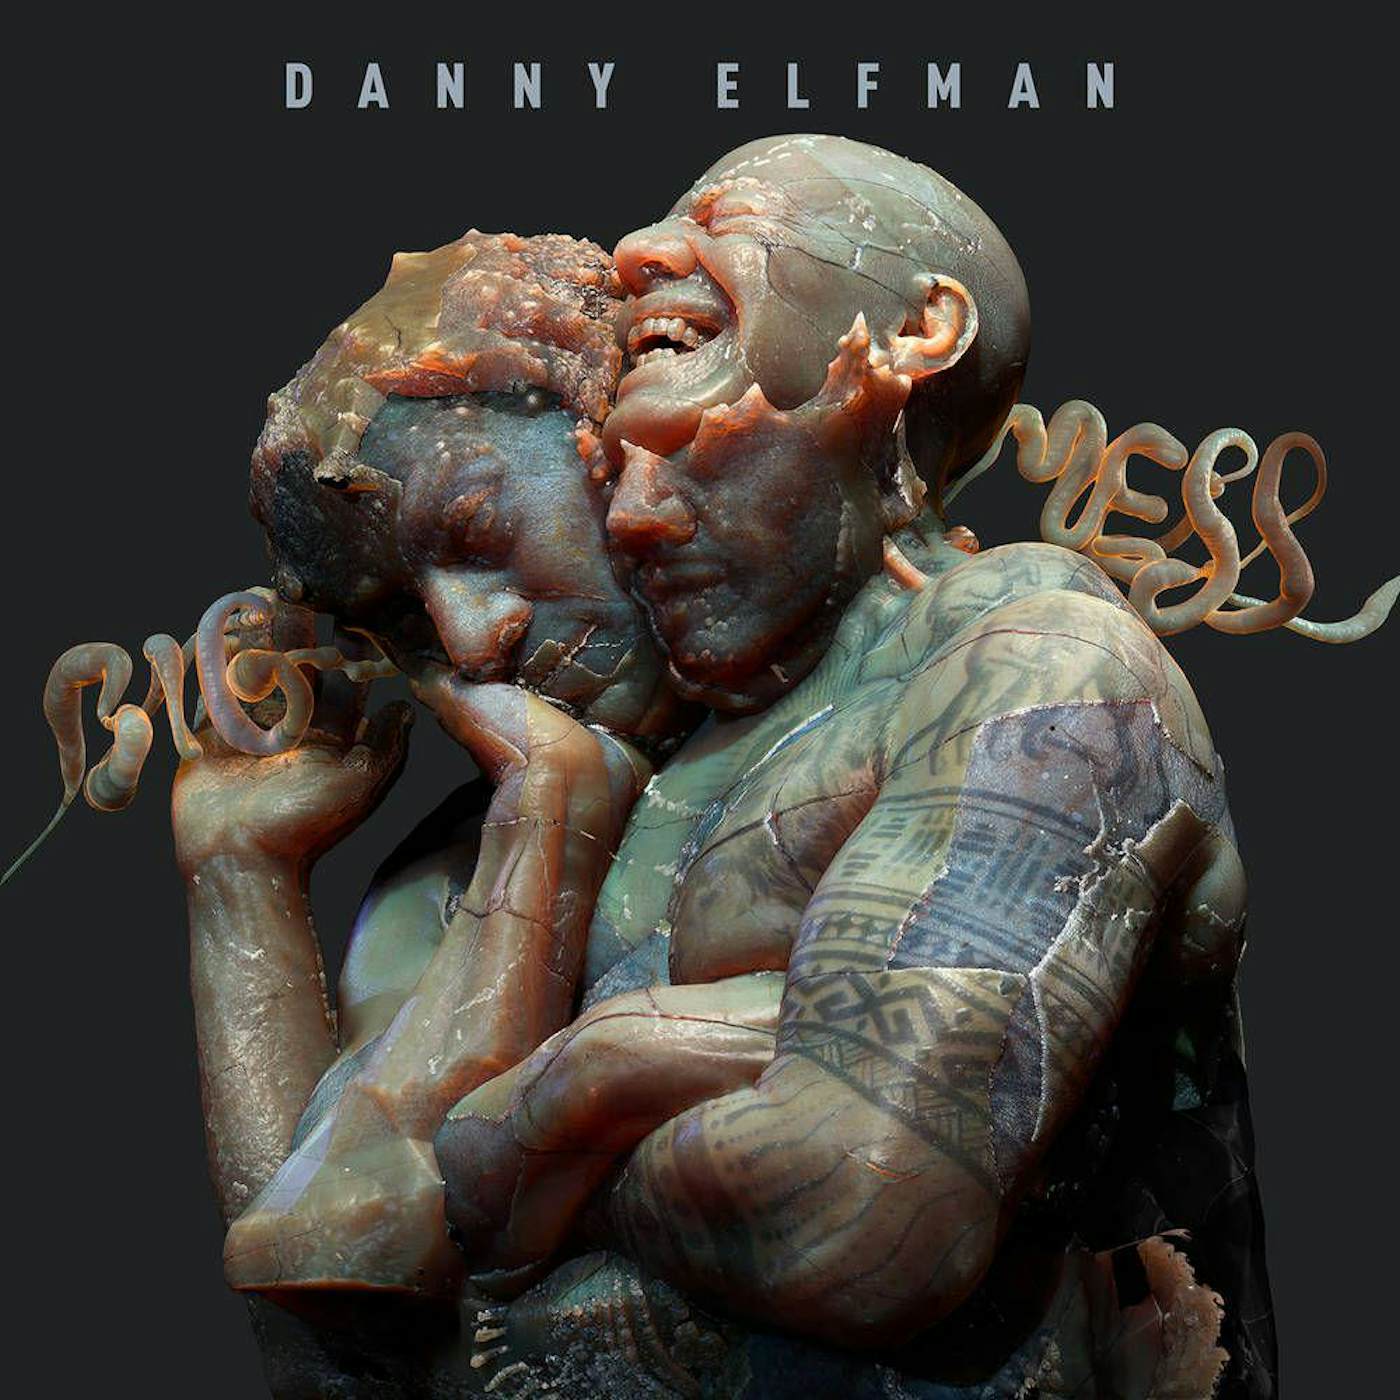 Danny Elfman BIG MESS CD